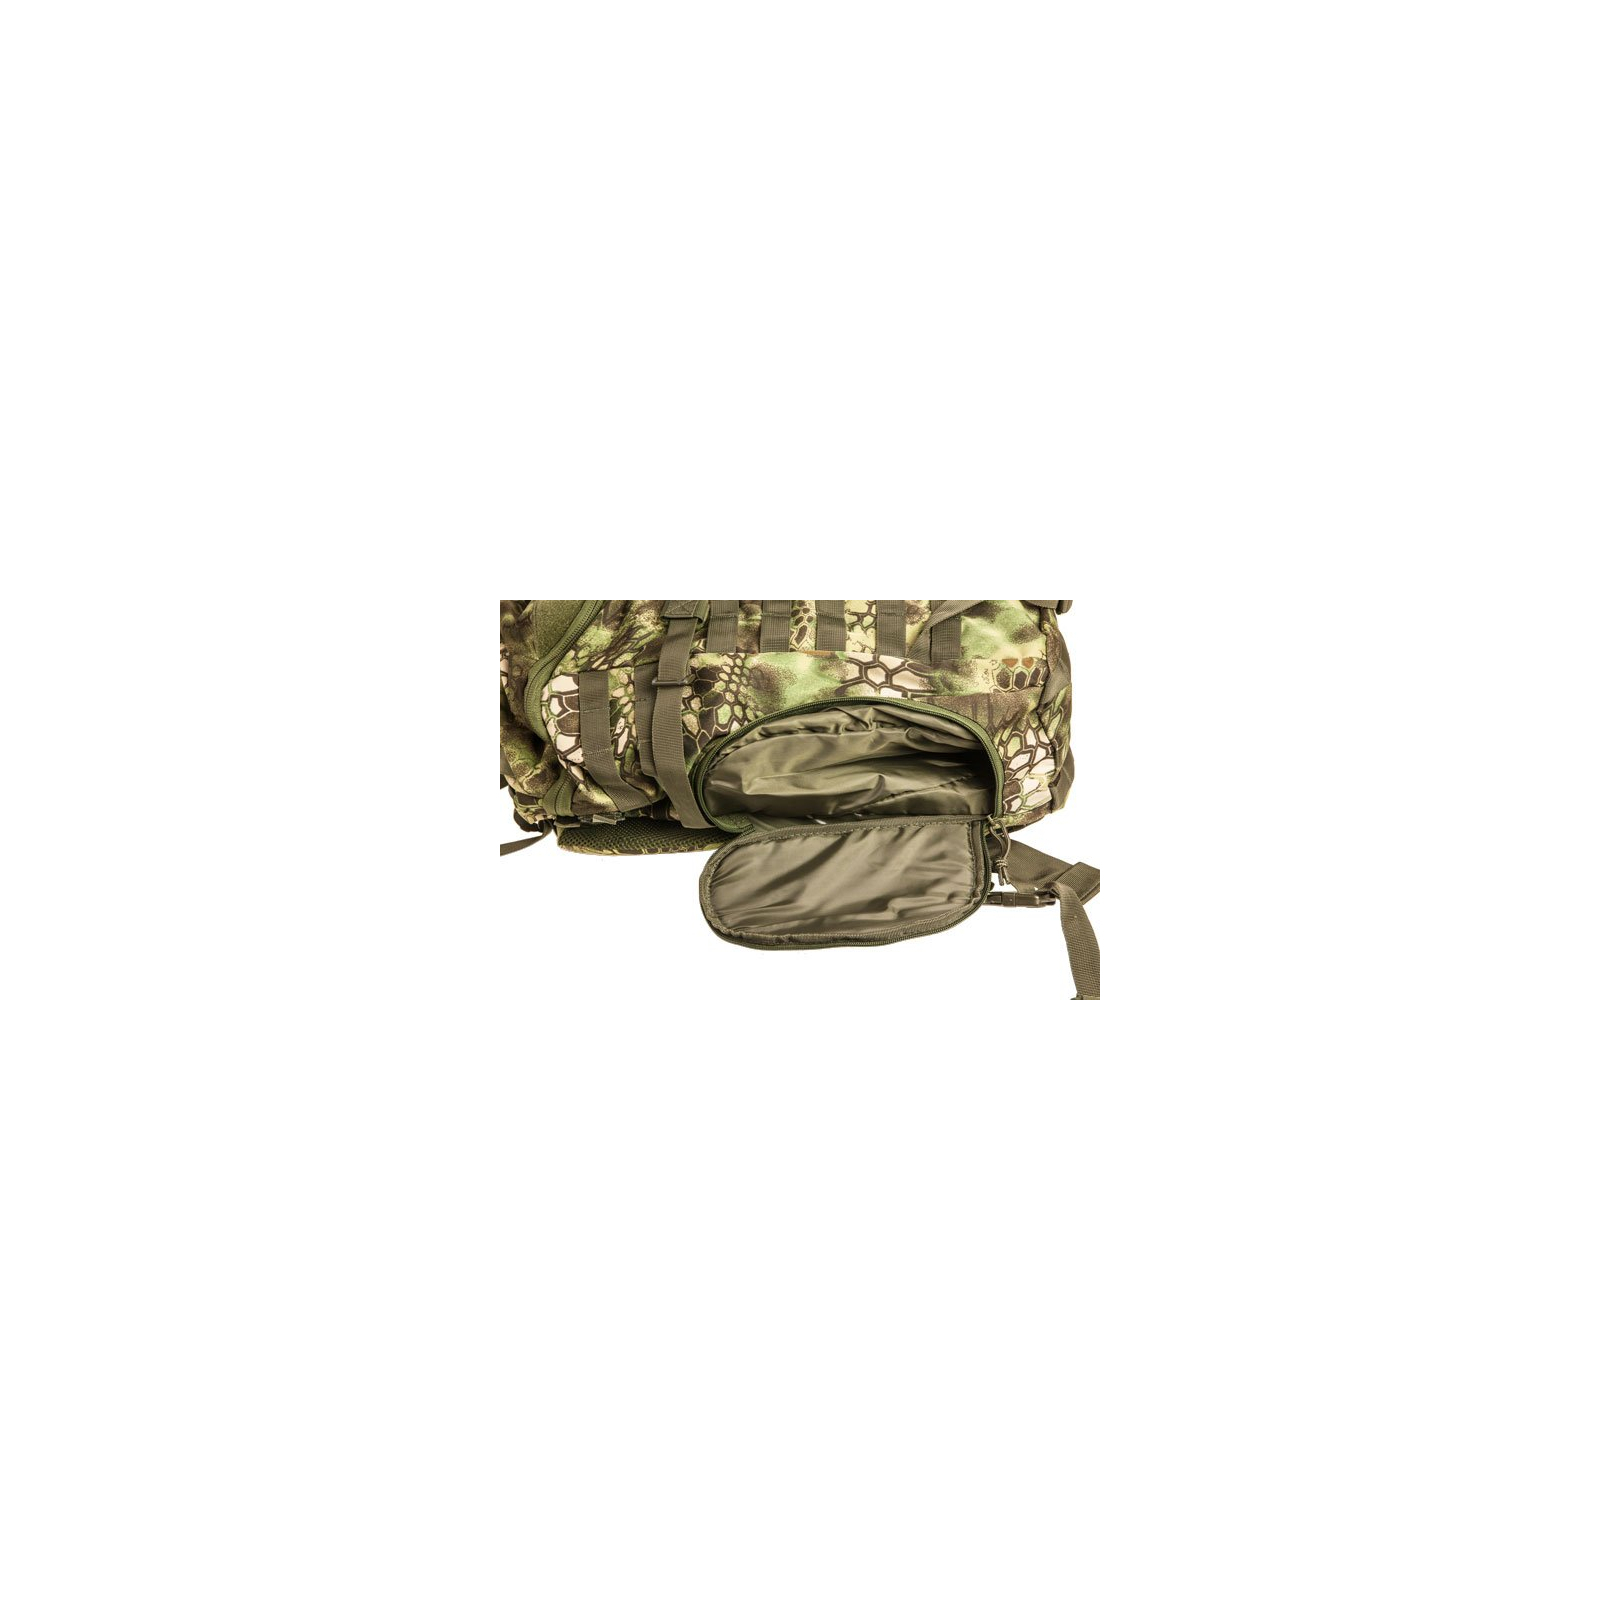 Рюкзак туристический Skif Tac тактический штурмовой 35 литров kryptek green (GB0131-KGR) изображение 5